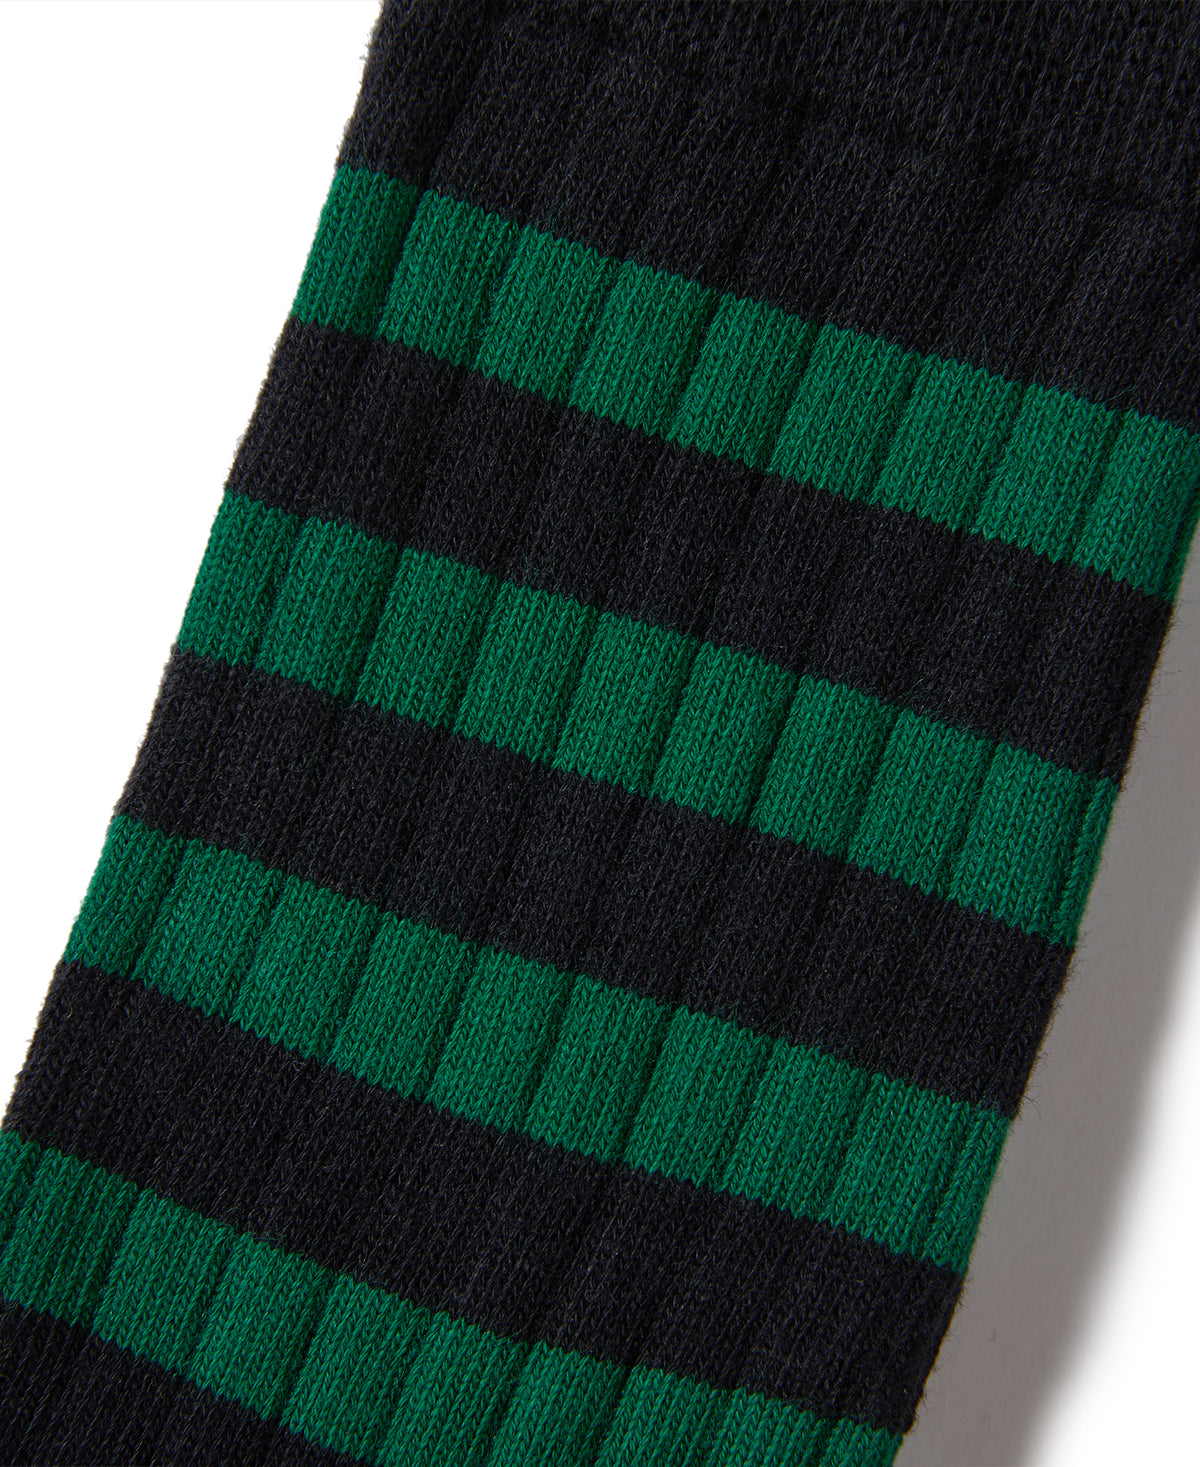 Retro Striped Cotton Socks - Black/Green